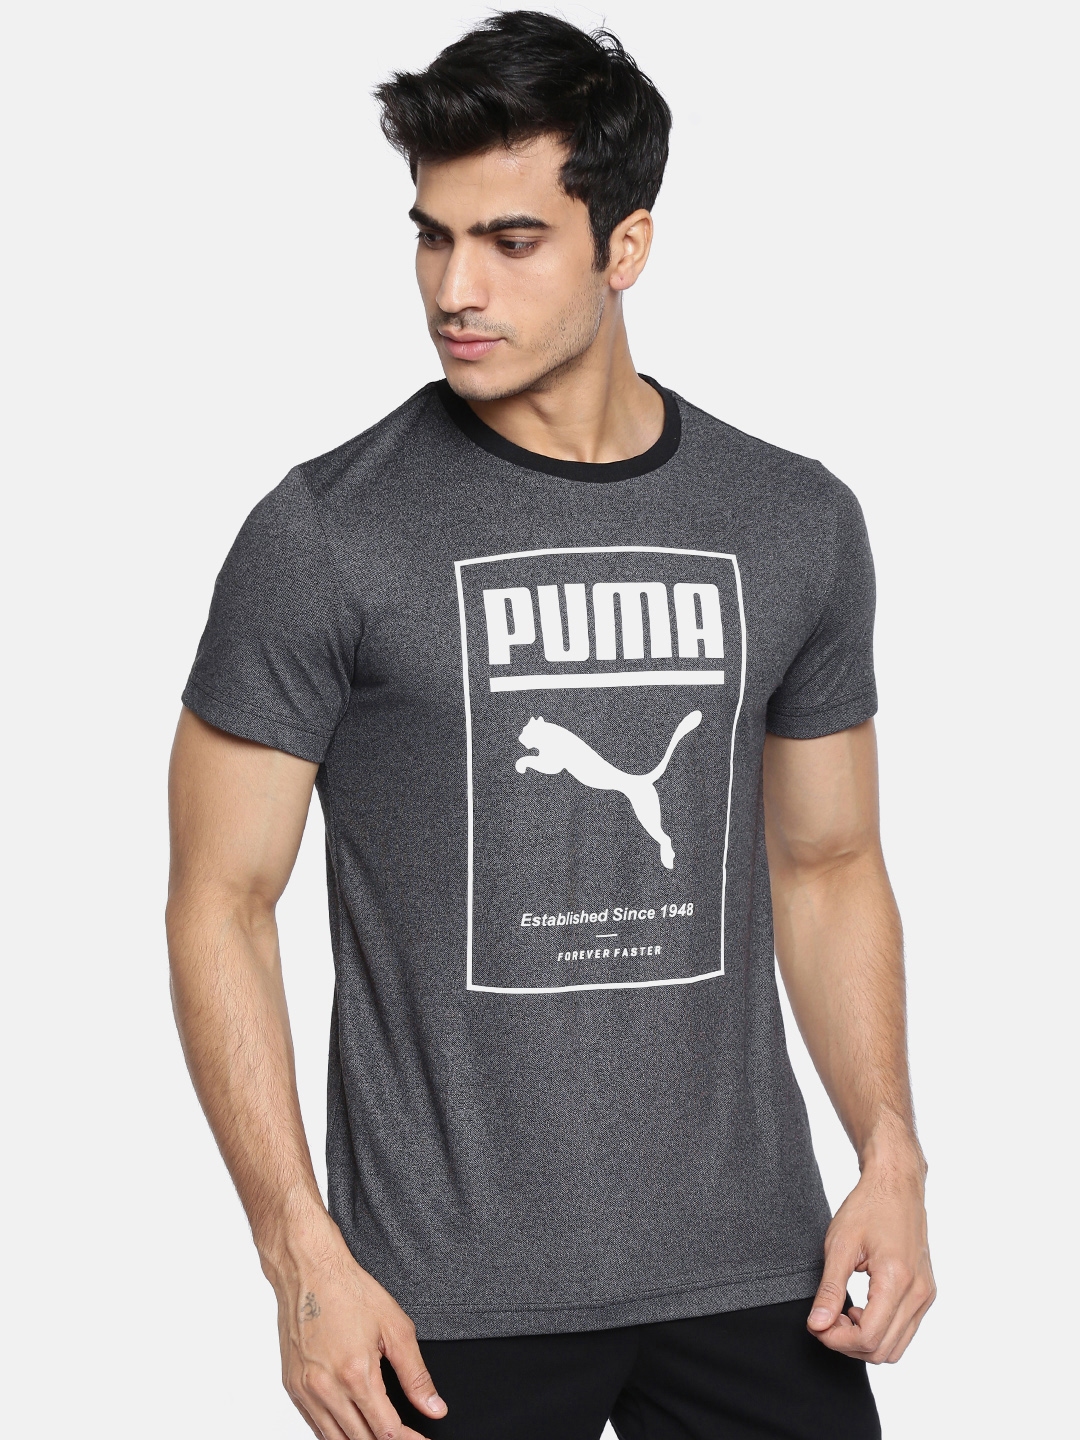 puma 1948 t shirt